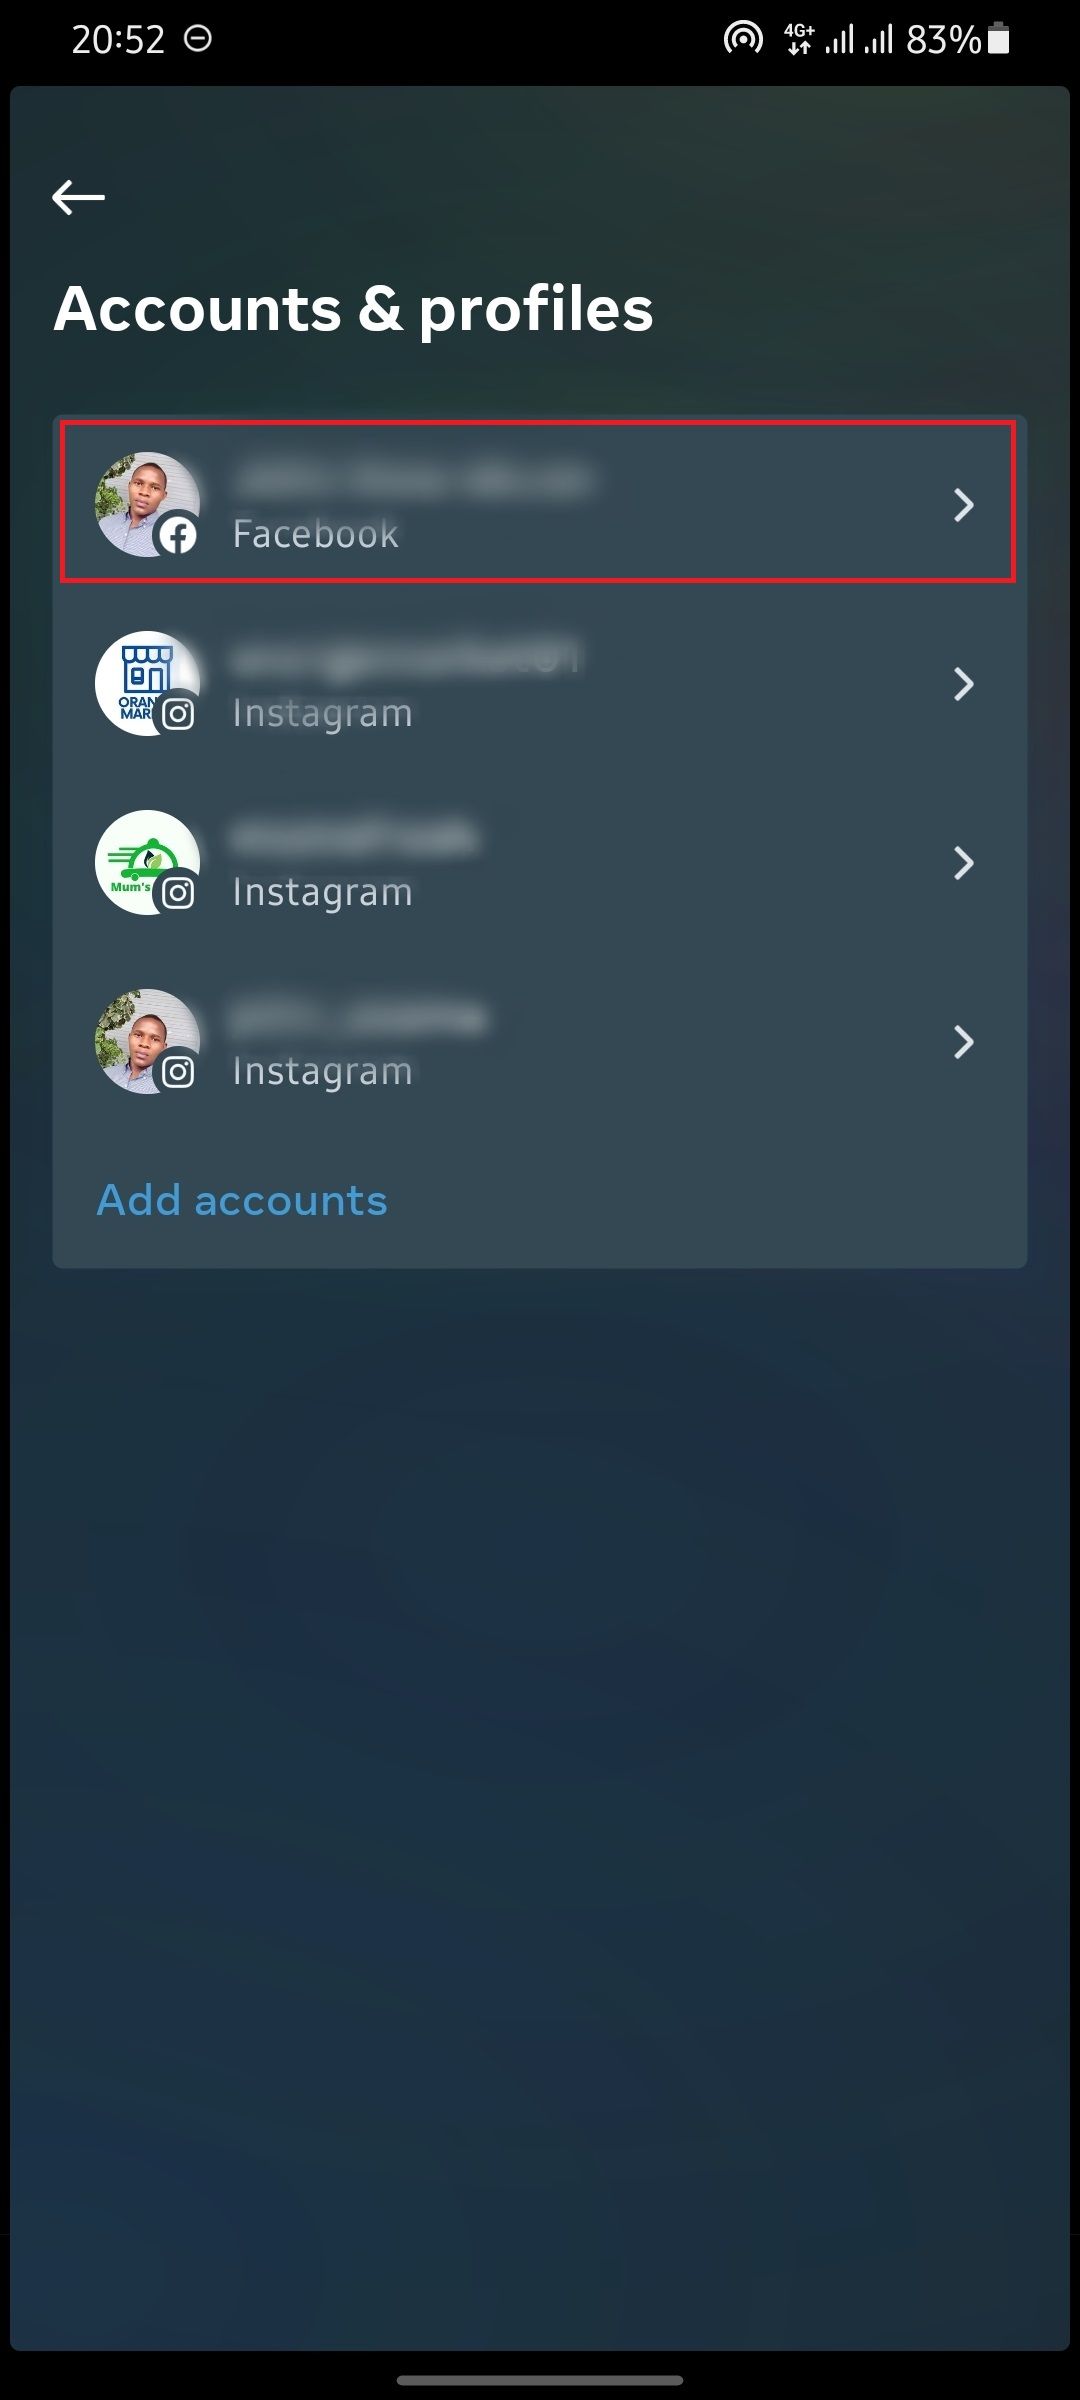 снимок экрана с профилями аккаунтов в Instagram